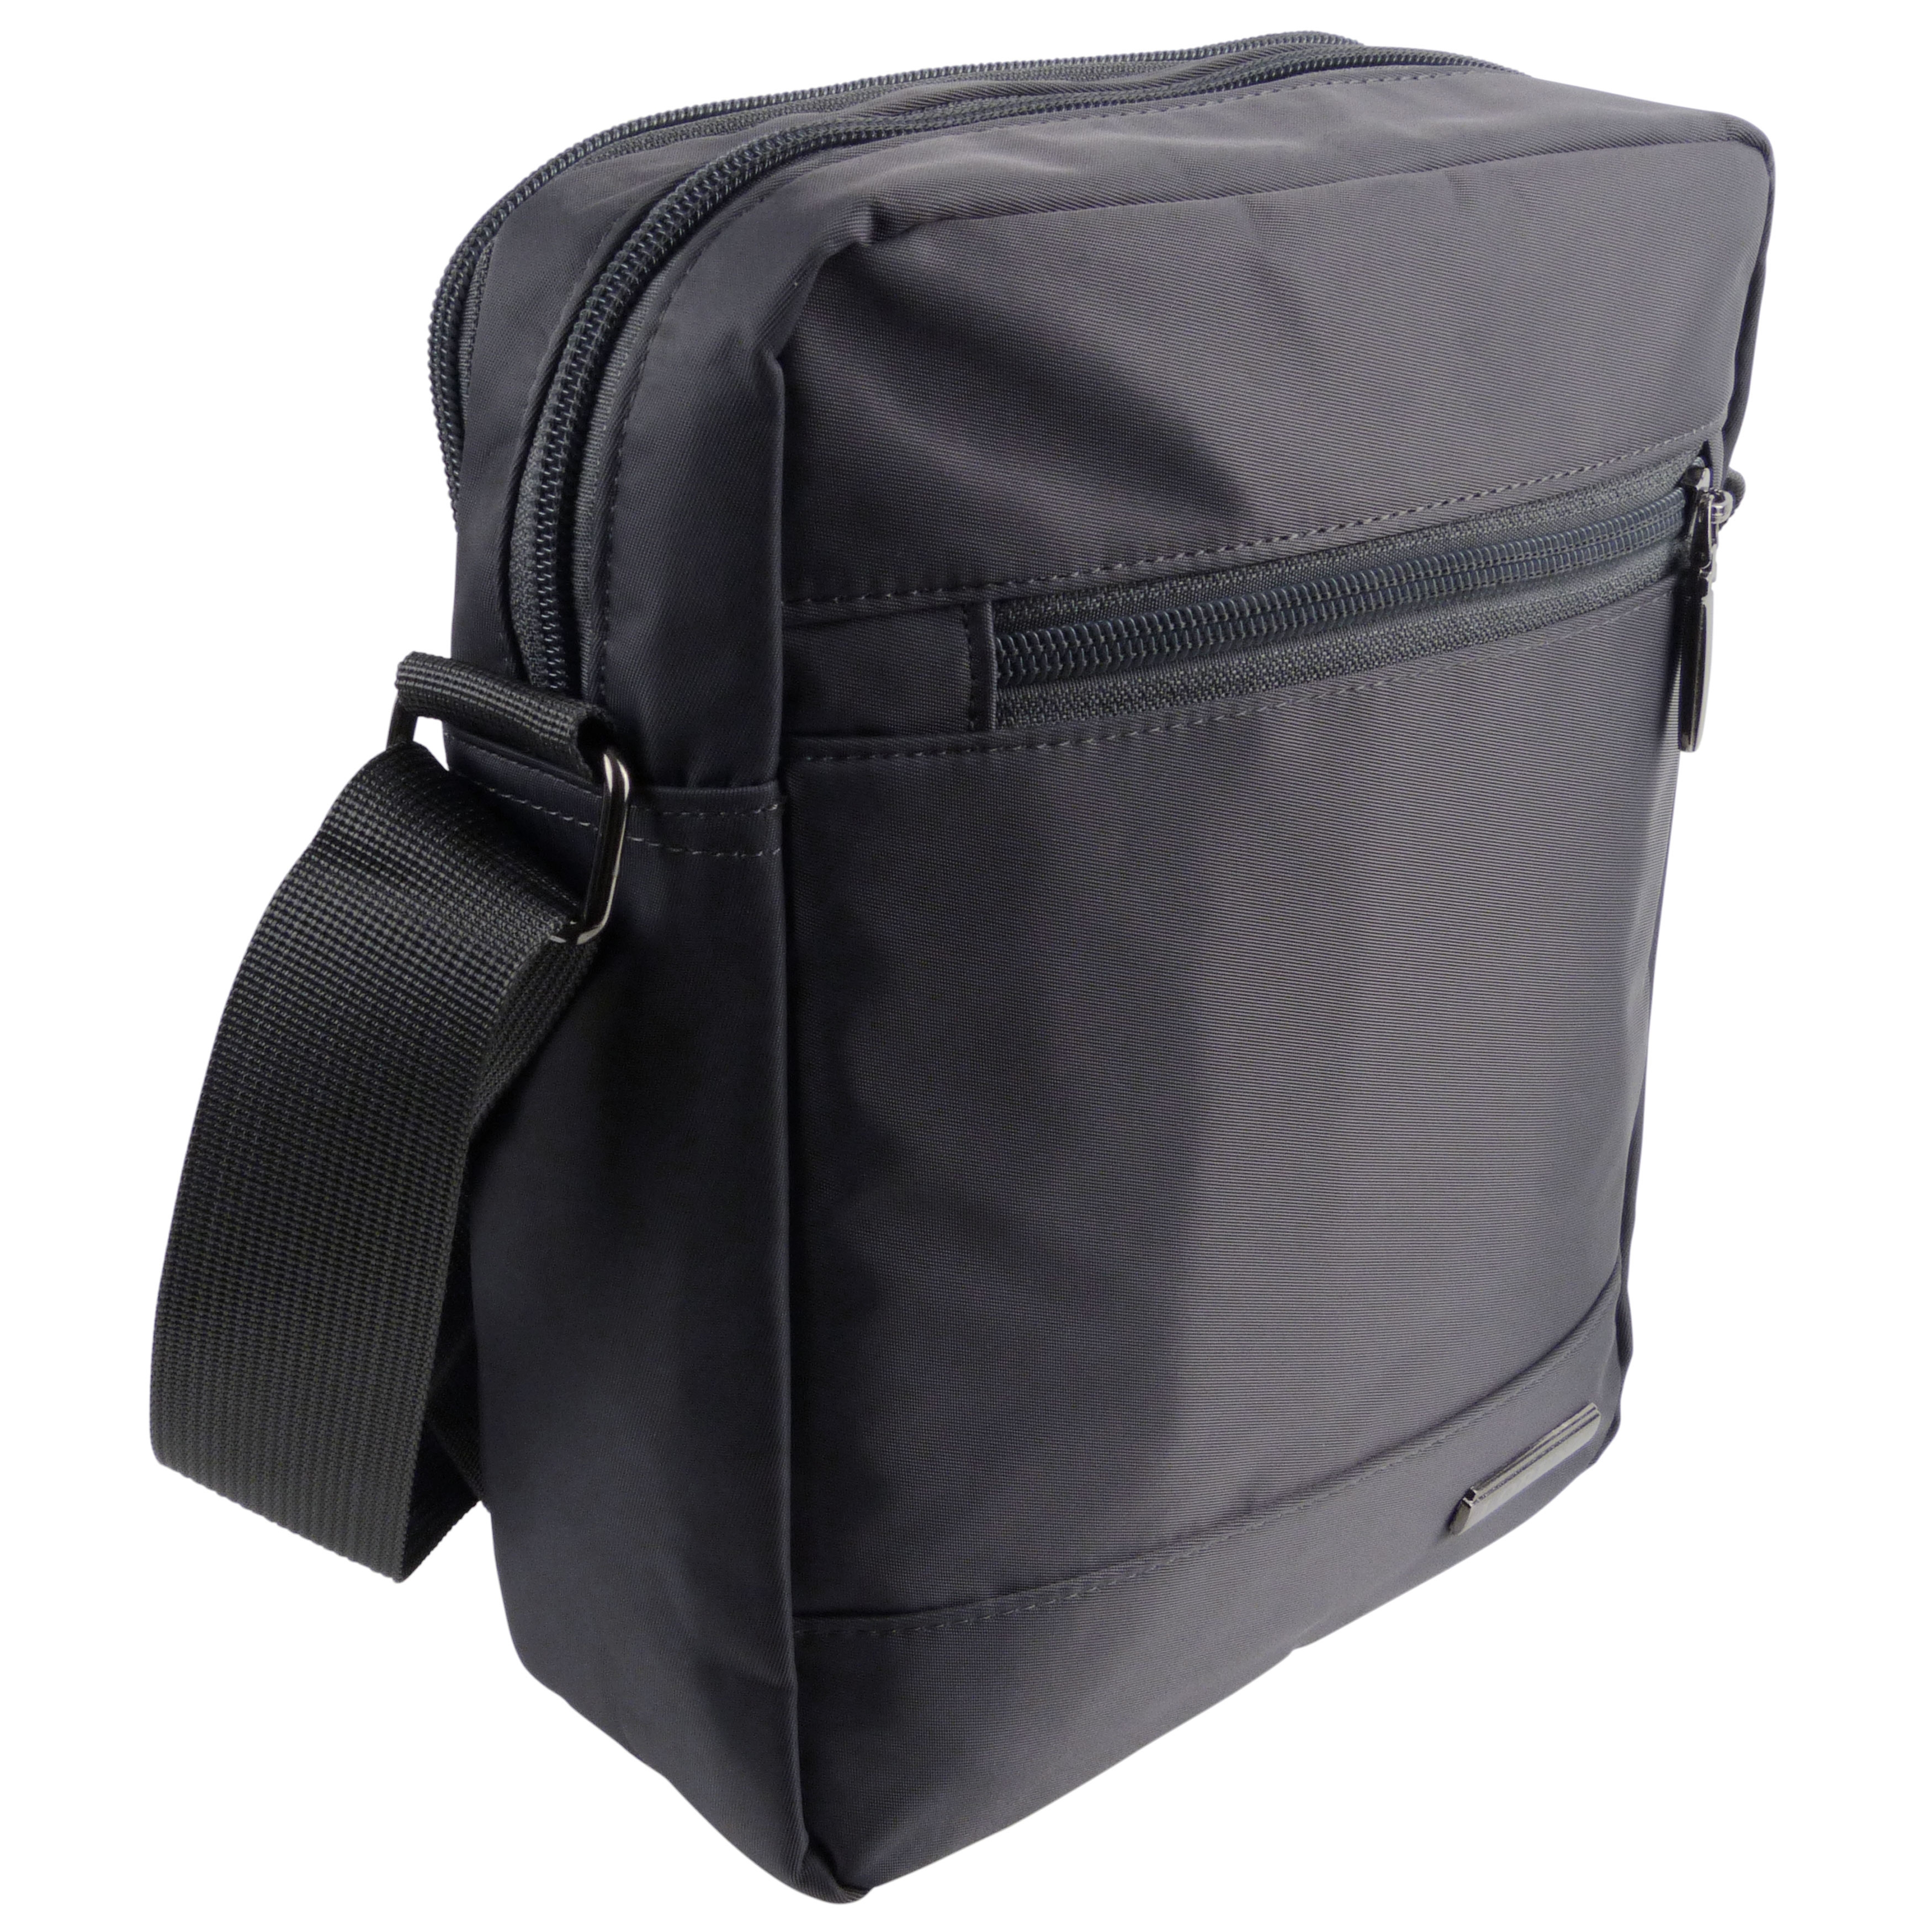 Padded Nylon Mens Cross Body Bag Shoulder Bag | eBay